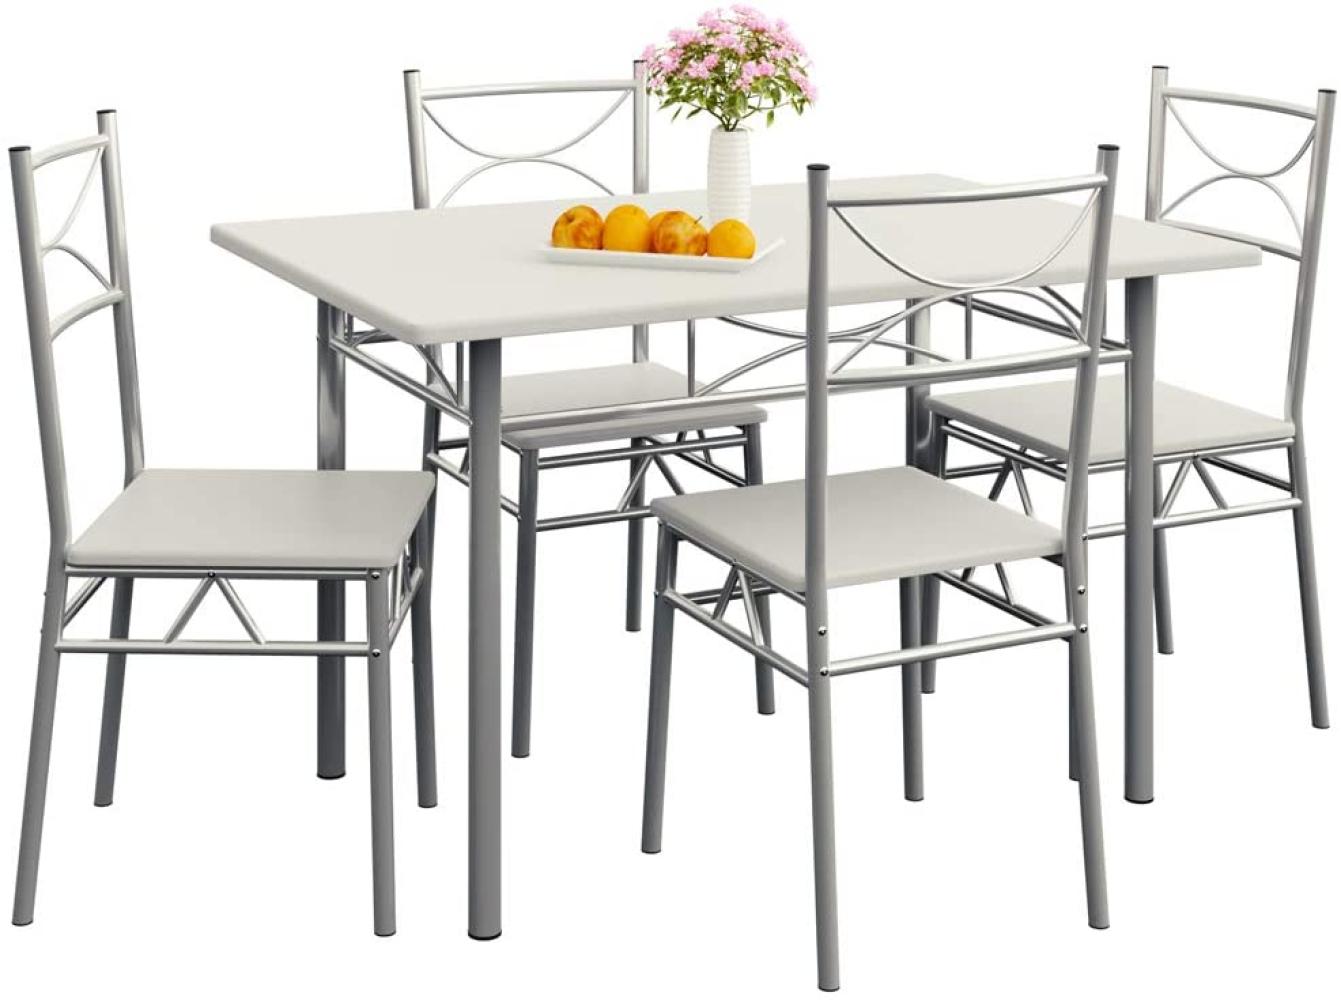 Casaria Esstisch Küchentisch mit 4 Stühlen Esszimmergruppe Essgruppe Küche Tisch Stuhl Set weiß Bild 1